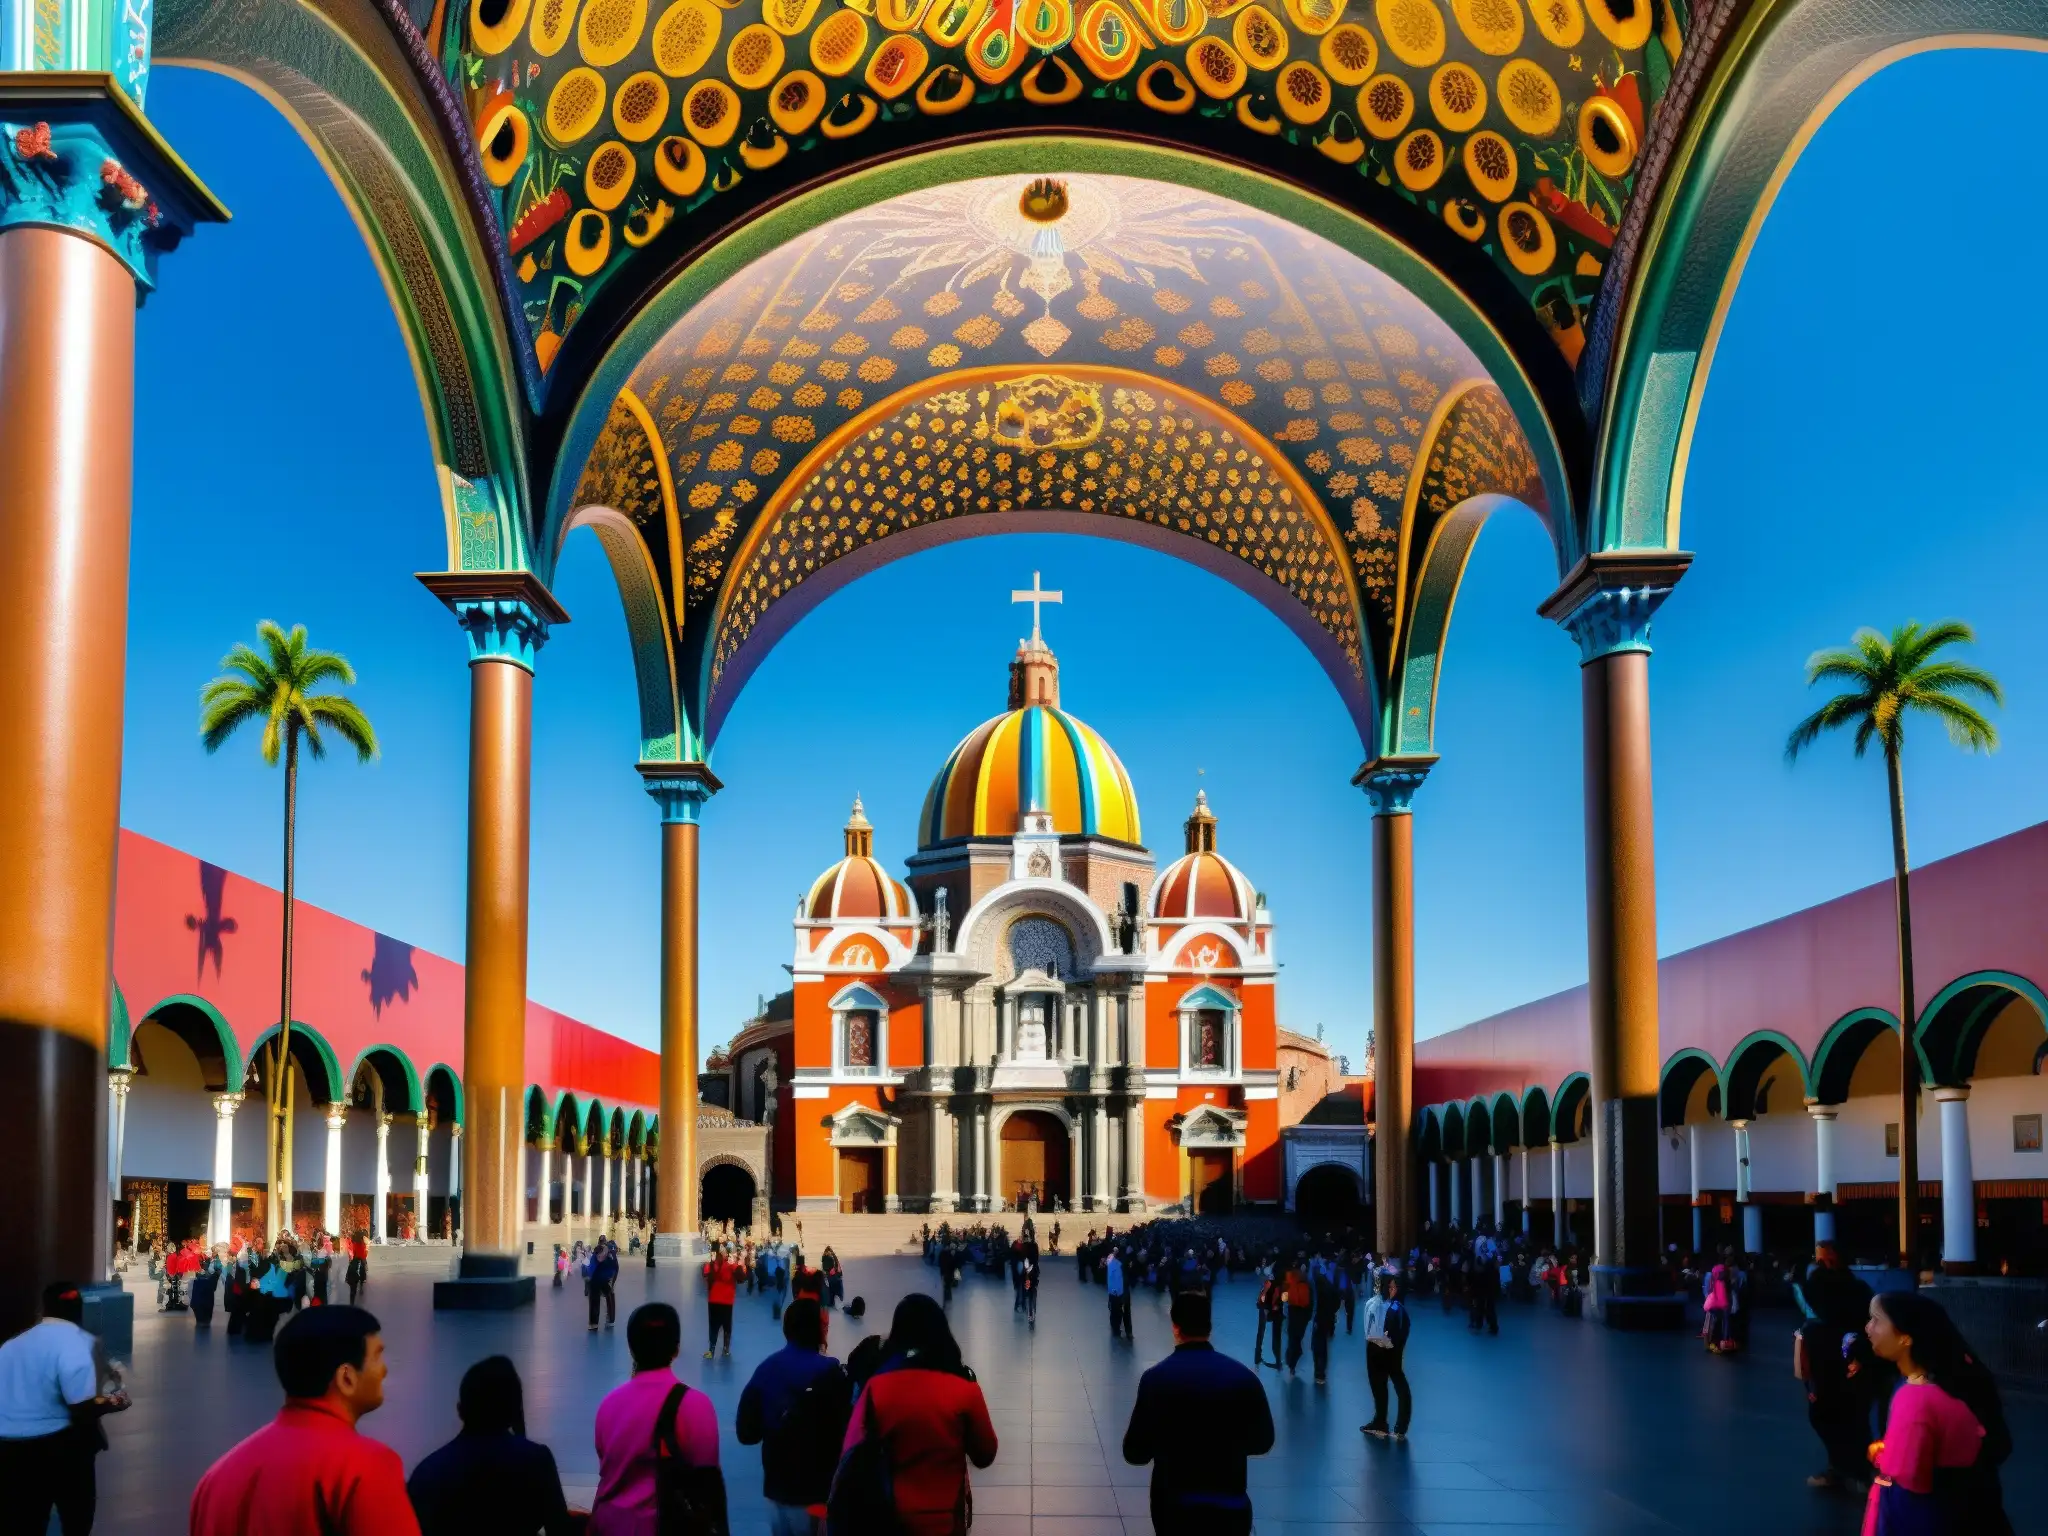 Vista majestuosa de la Basílica de Nuestra Señora de Guadalupe en México, con fieles y detalles arquitectónicos